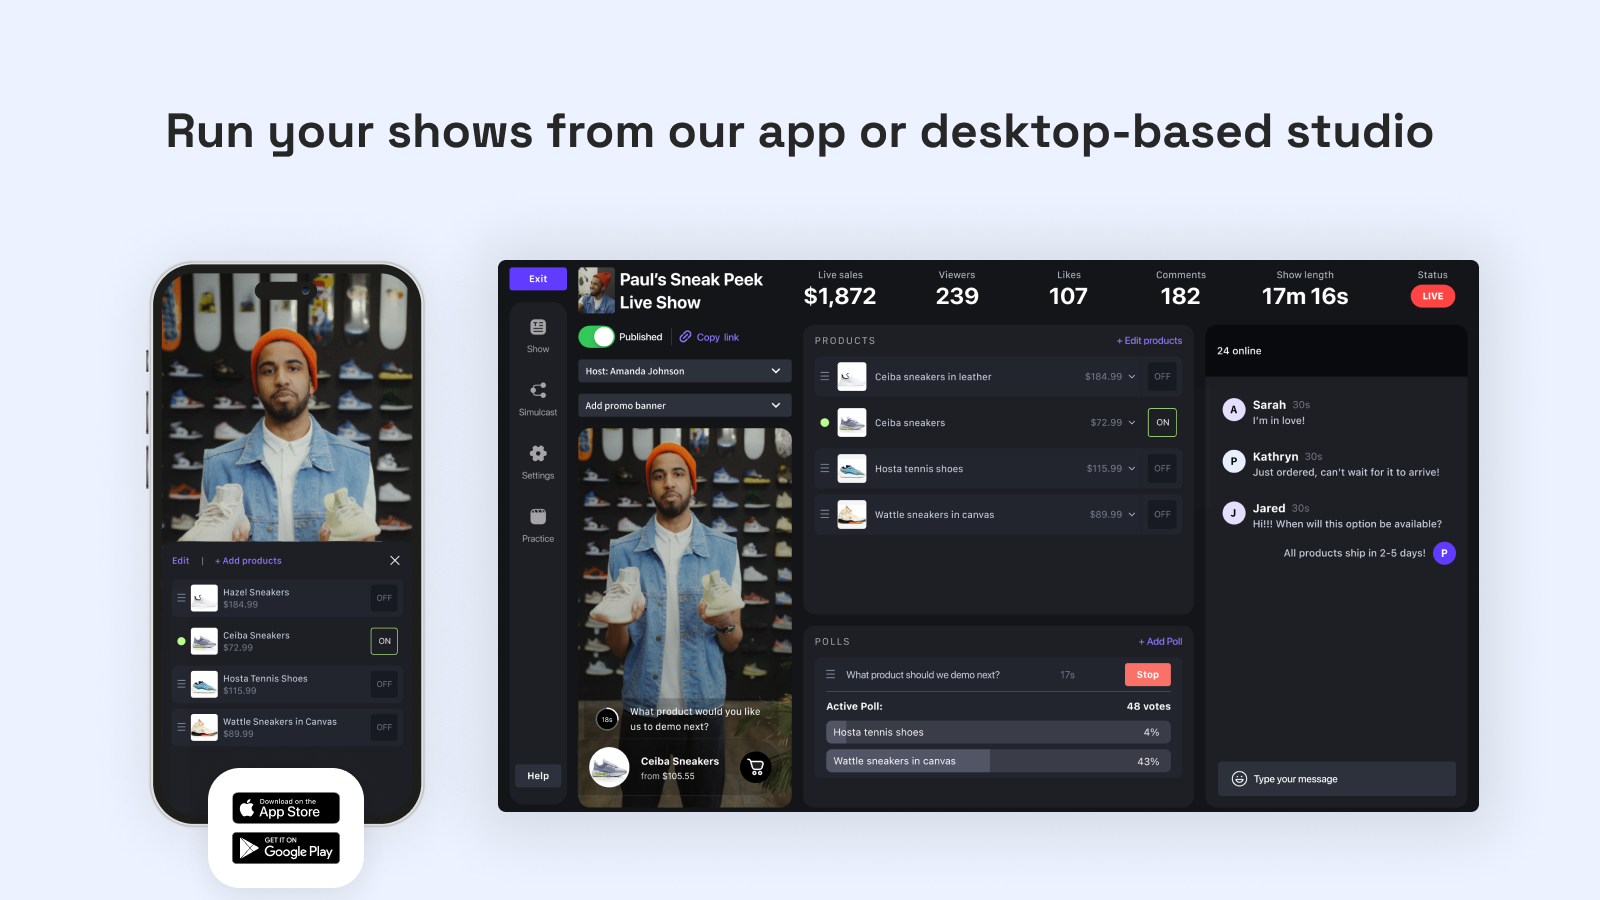 Showday: Kör dina shower från vår app eller skrivbordsbaserade studio